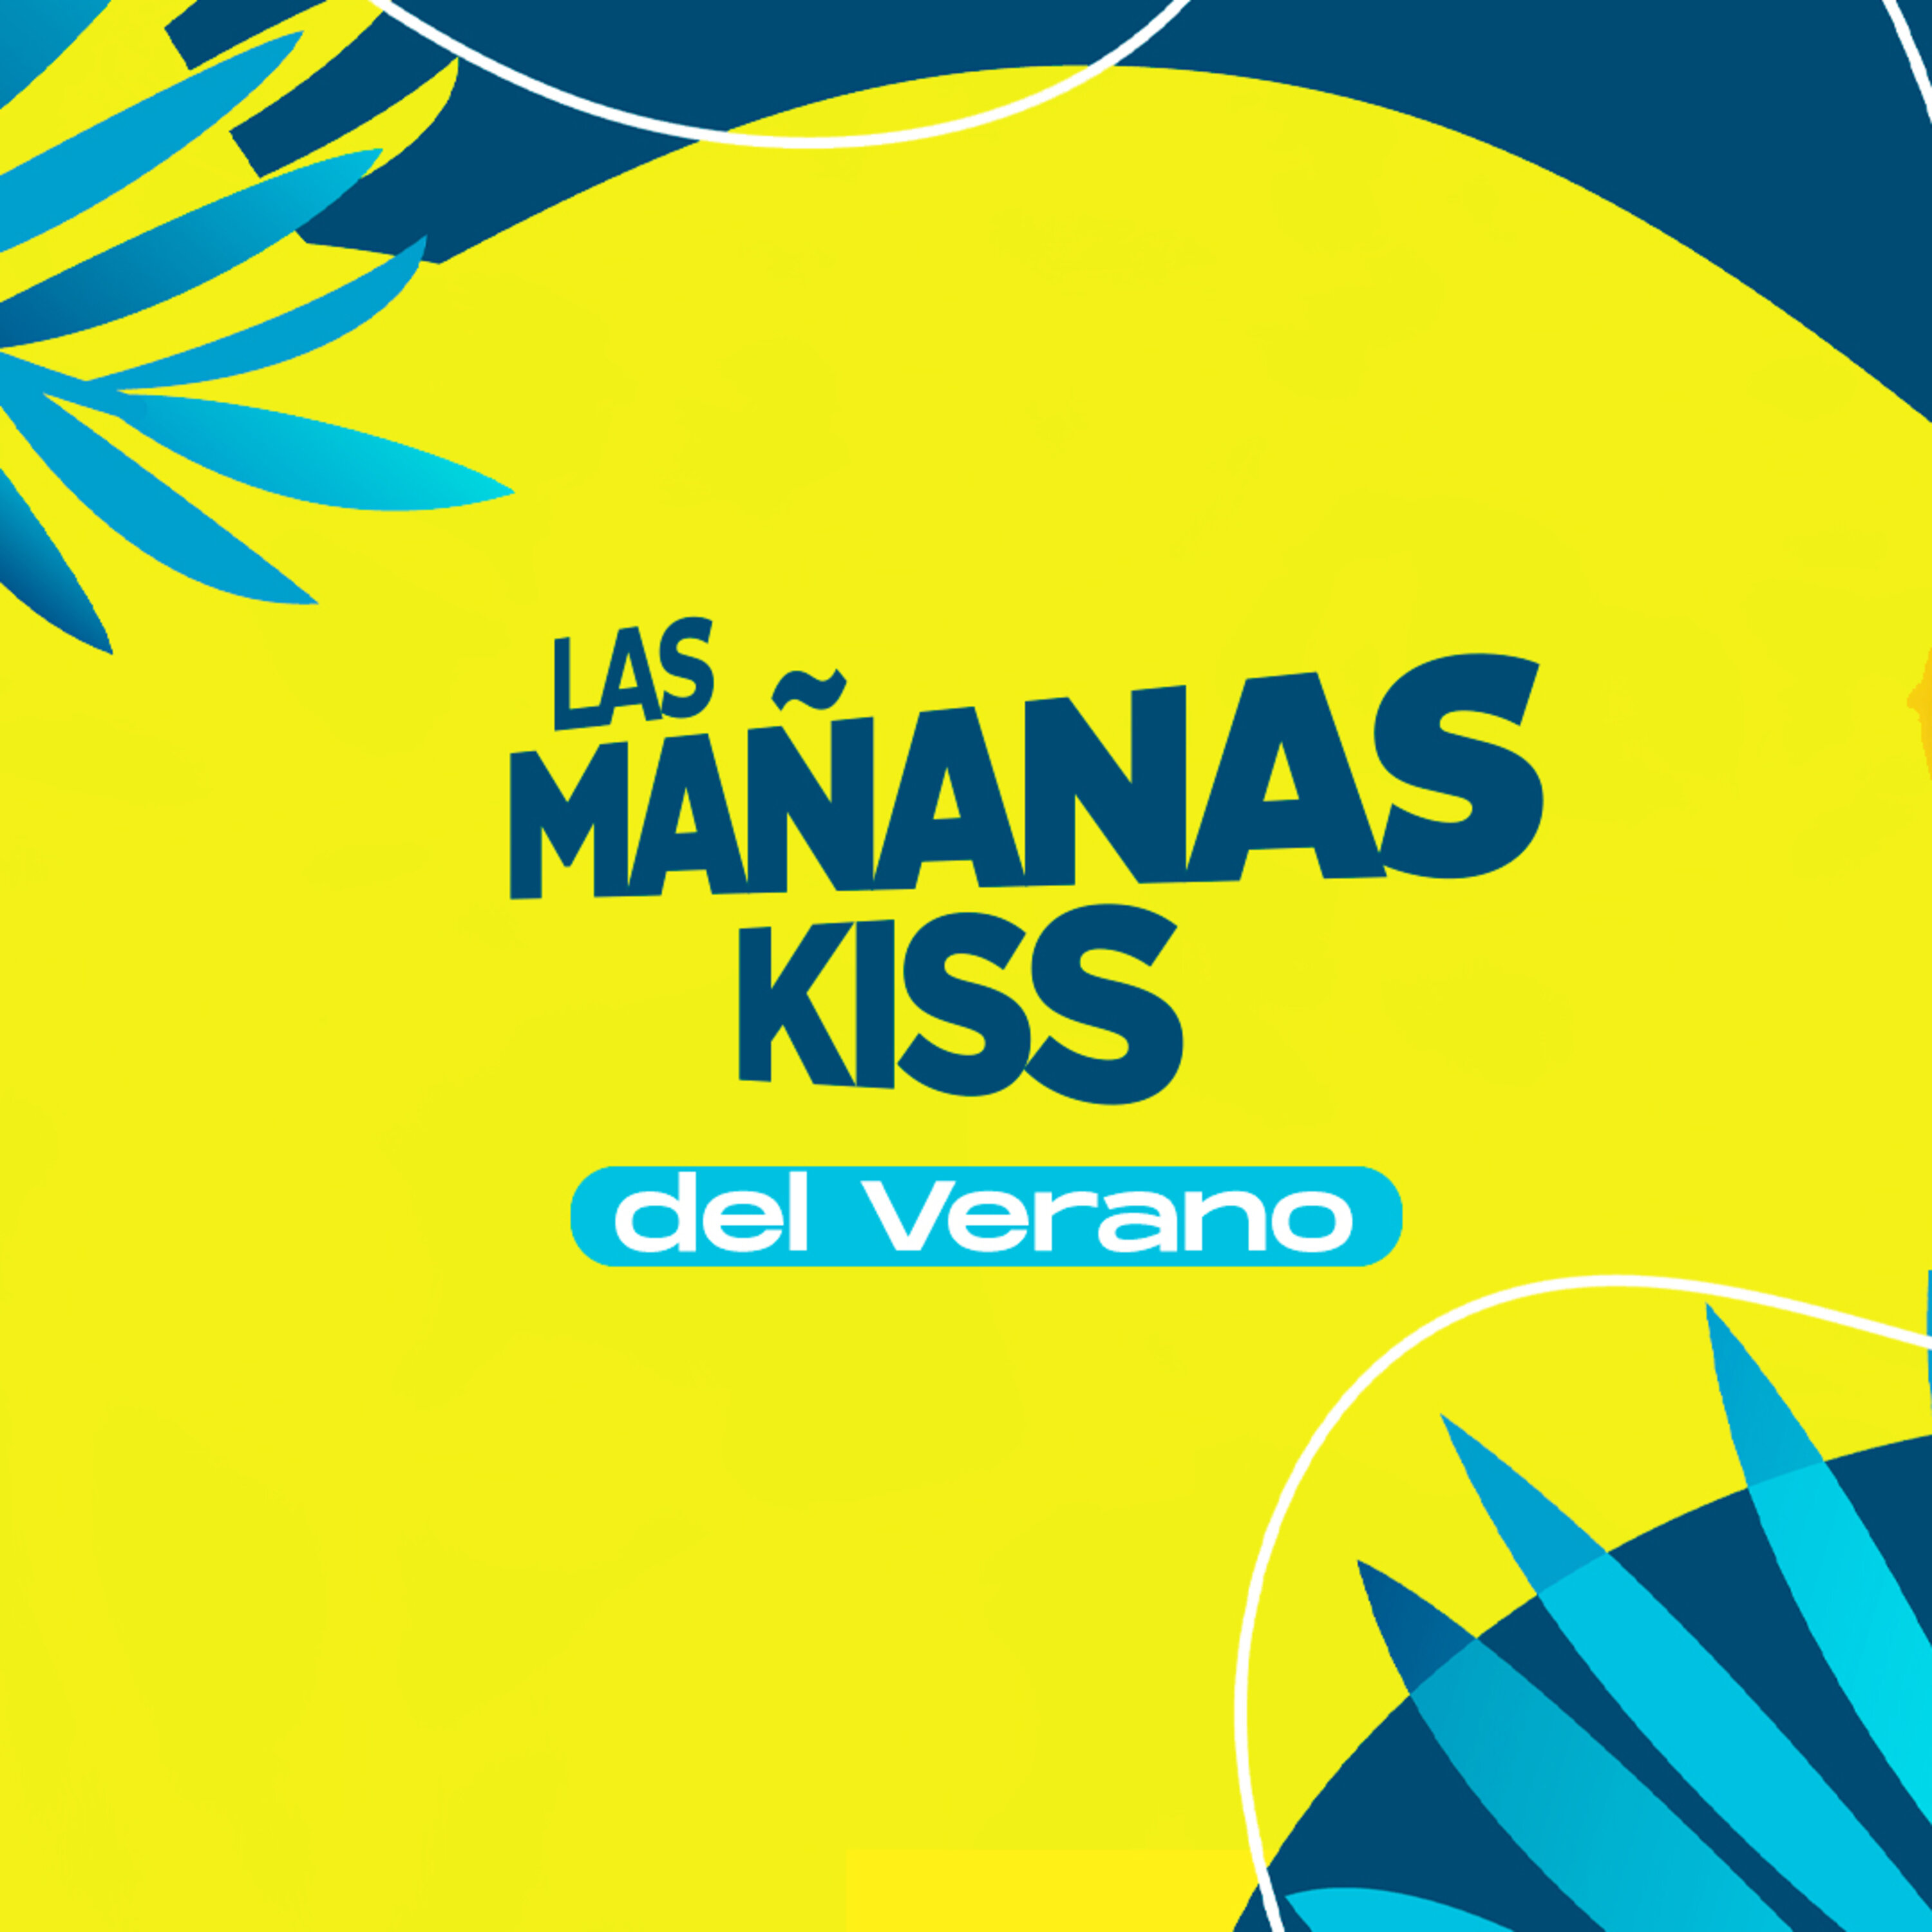 Las Mañanas KISS del Verano (05/08/2022 - 07-08h)